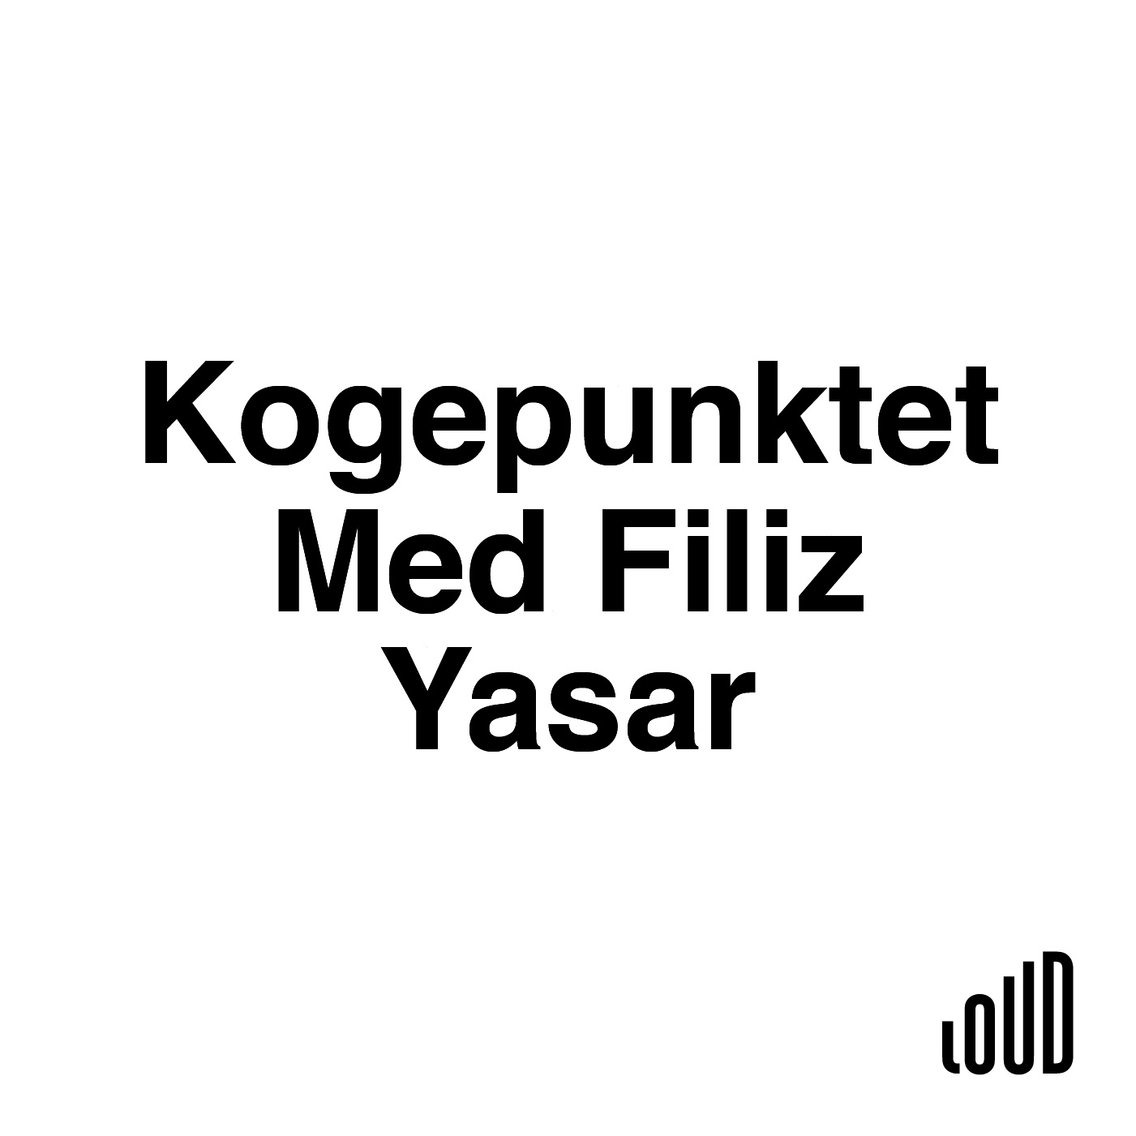 Kogepunktet med Filiz Yasar - Cover Image